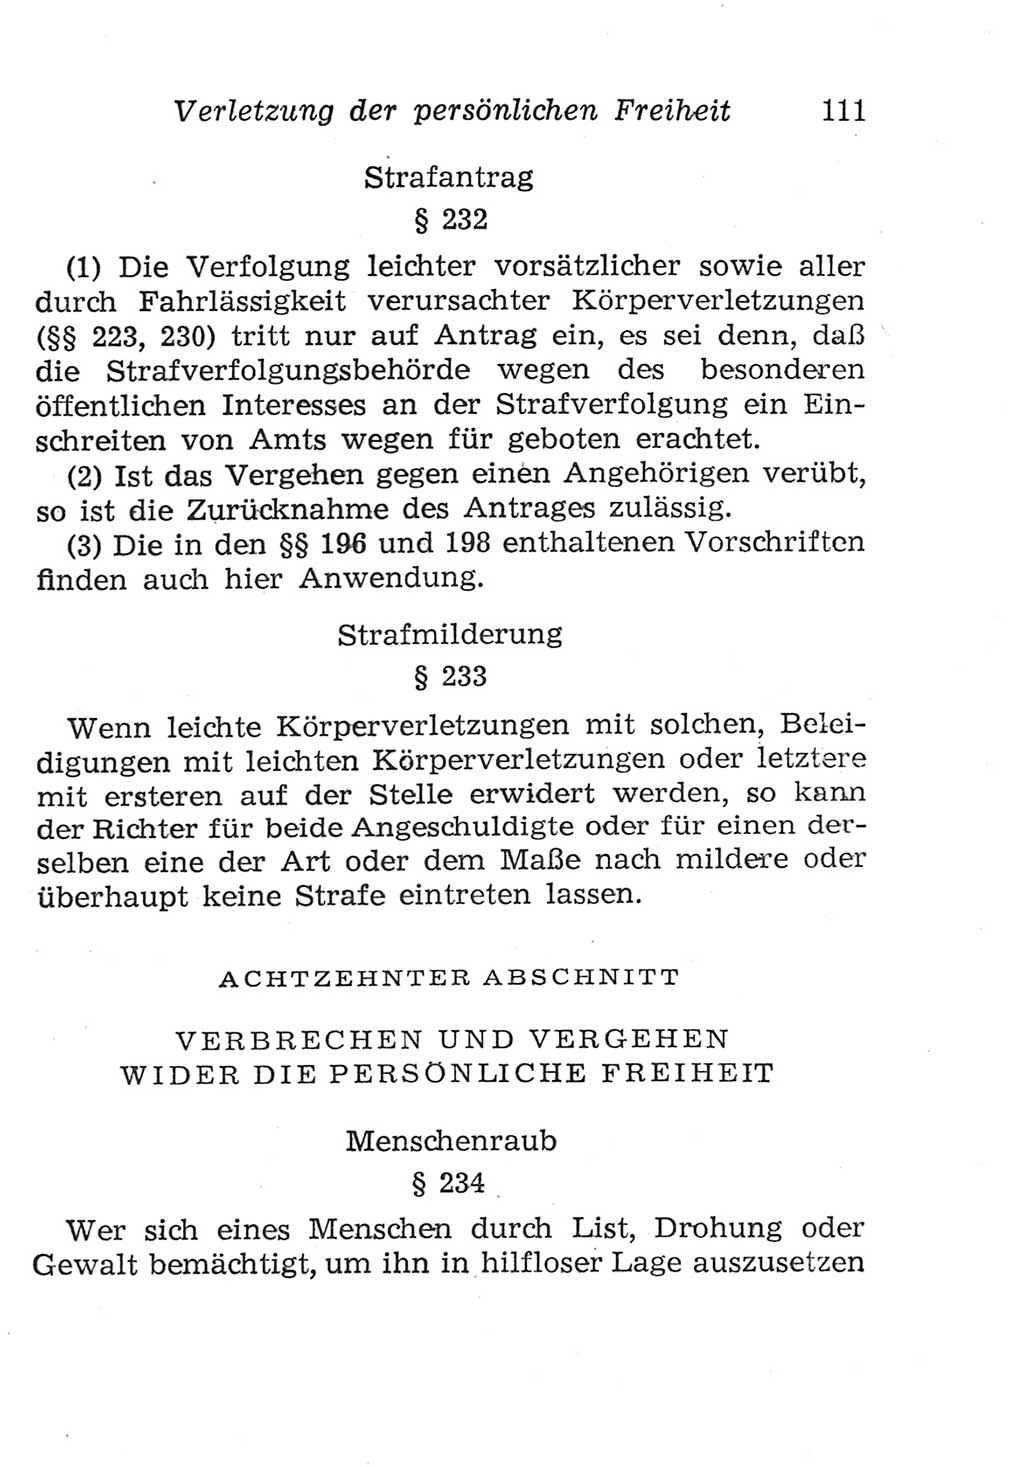 Strafgesetzbuch (StGB) und andere Strafgesetze [Deutsche Demokratische Republik (DDR)] 1957, Seite 111 (StGB Strafges. DDR 1957, S. 111)